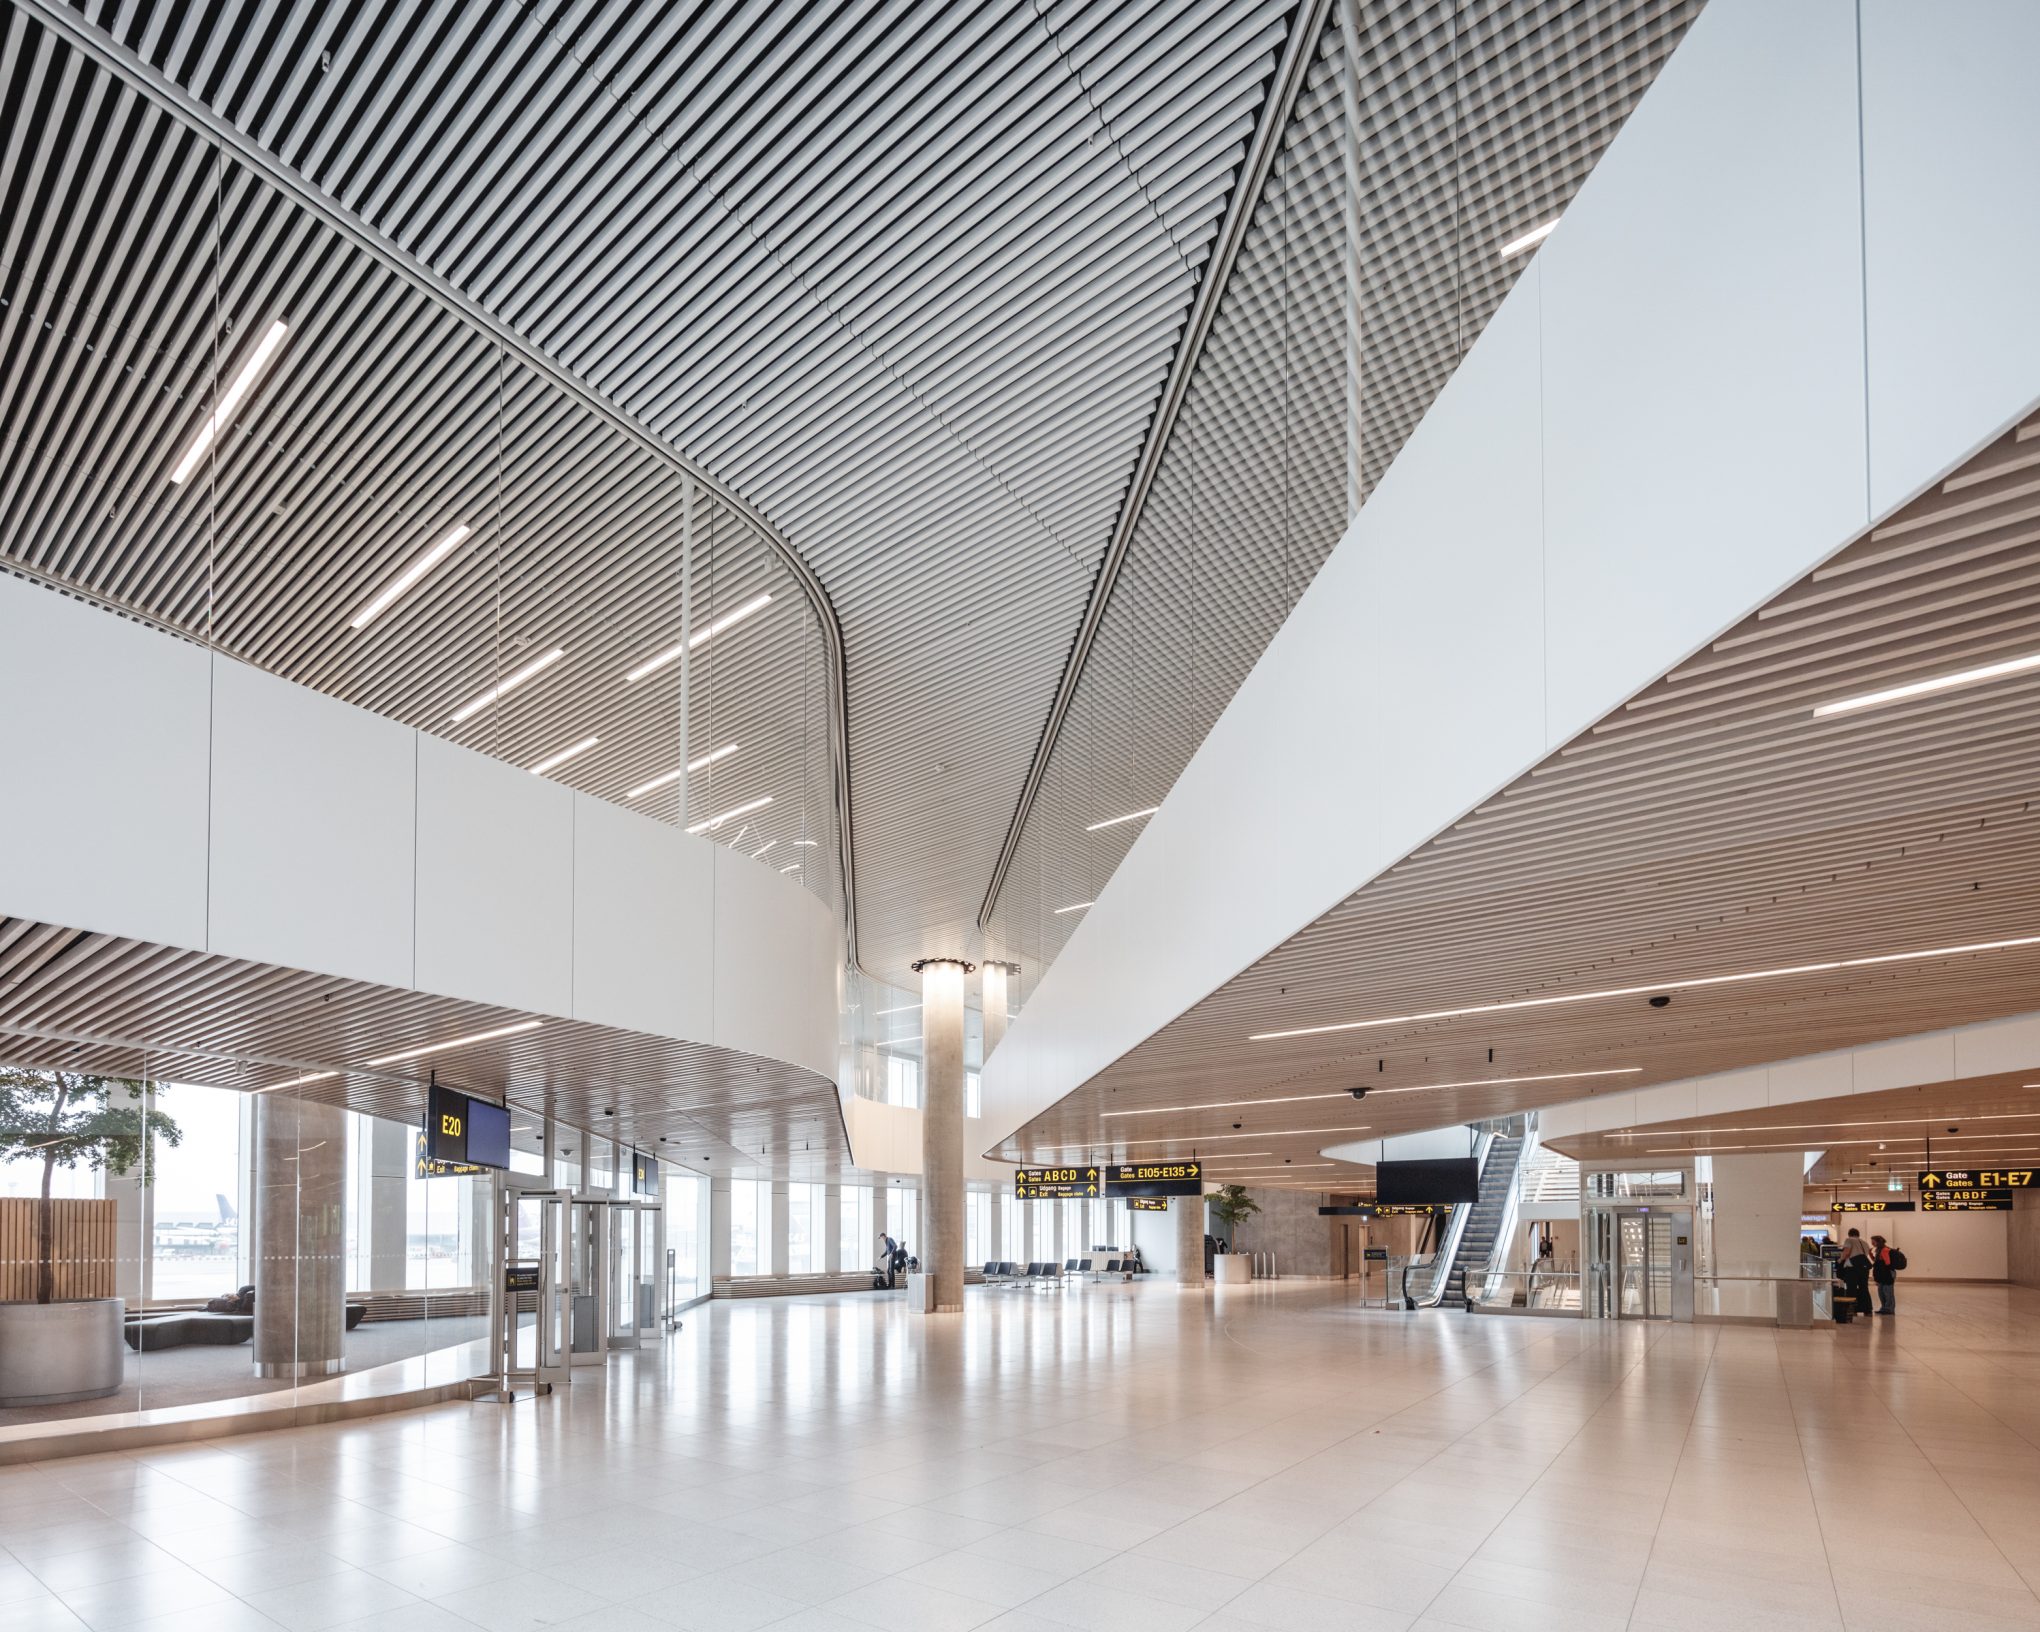 Copenhagen airport extension